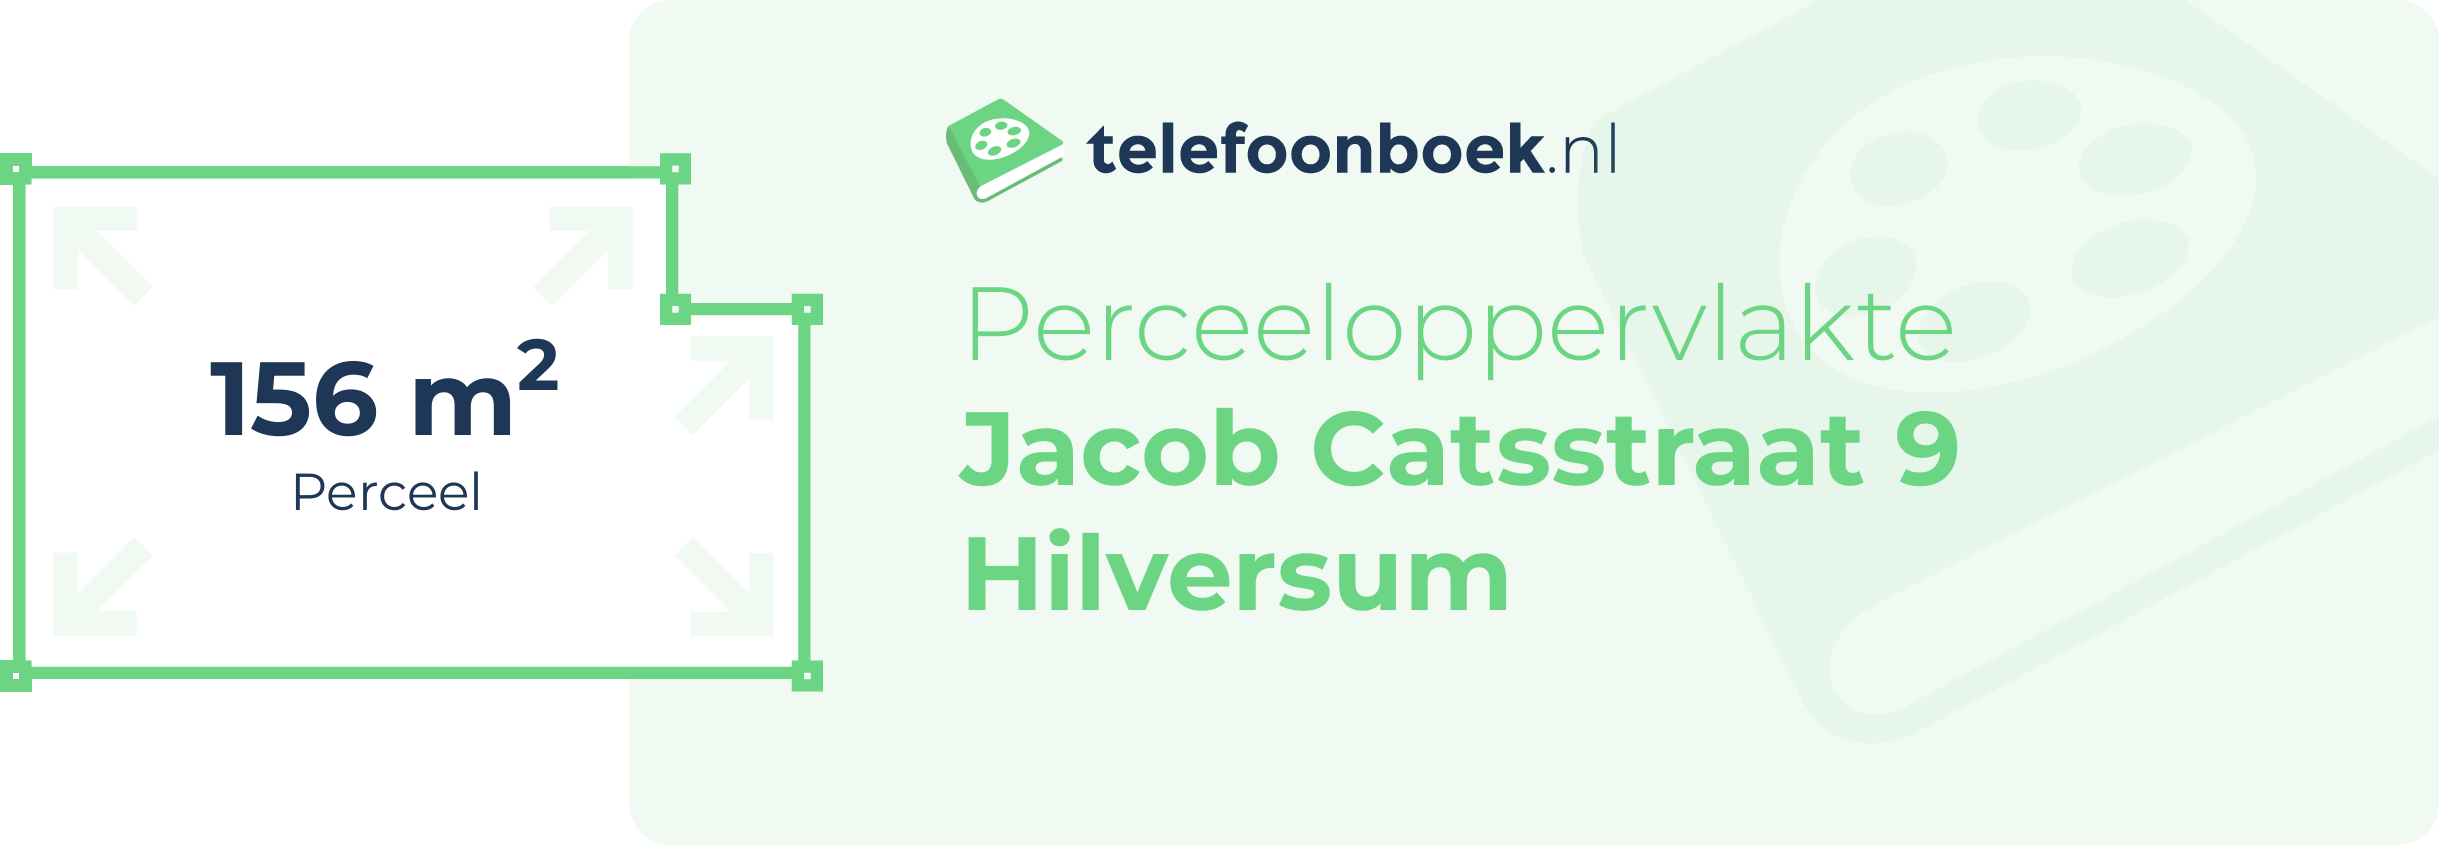 Perceeloppervlakte Jacob Catsstraat 9 Hilversum